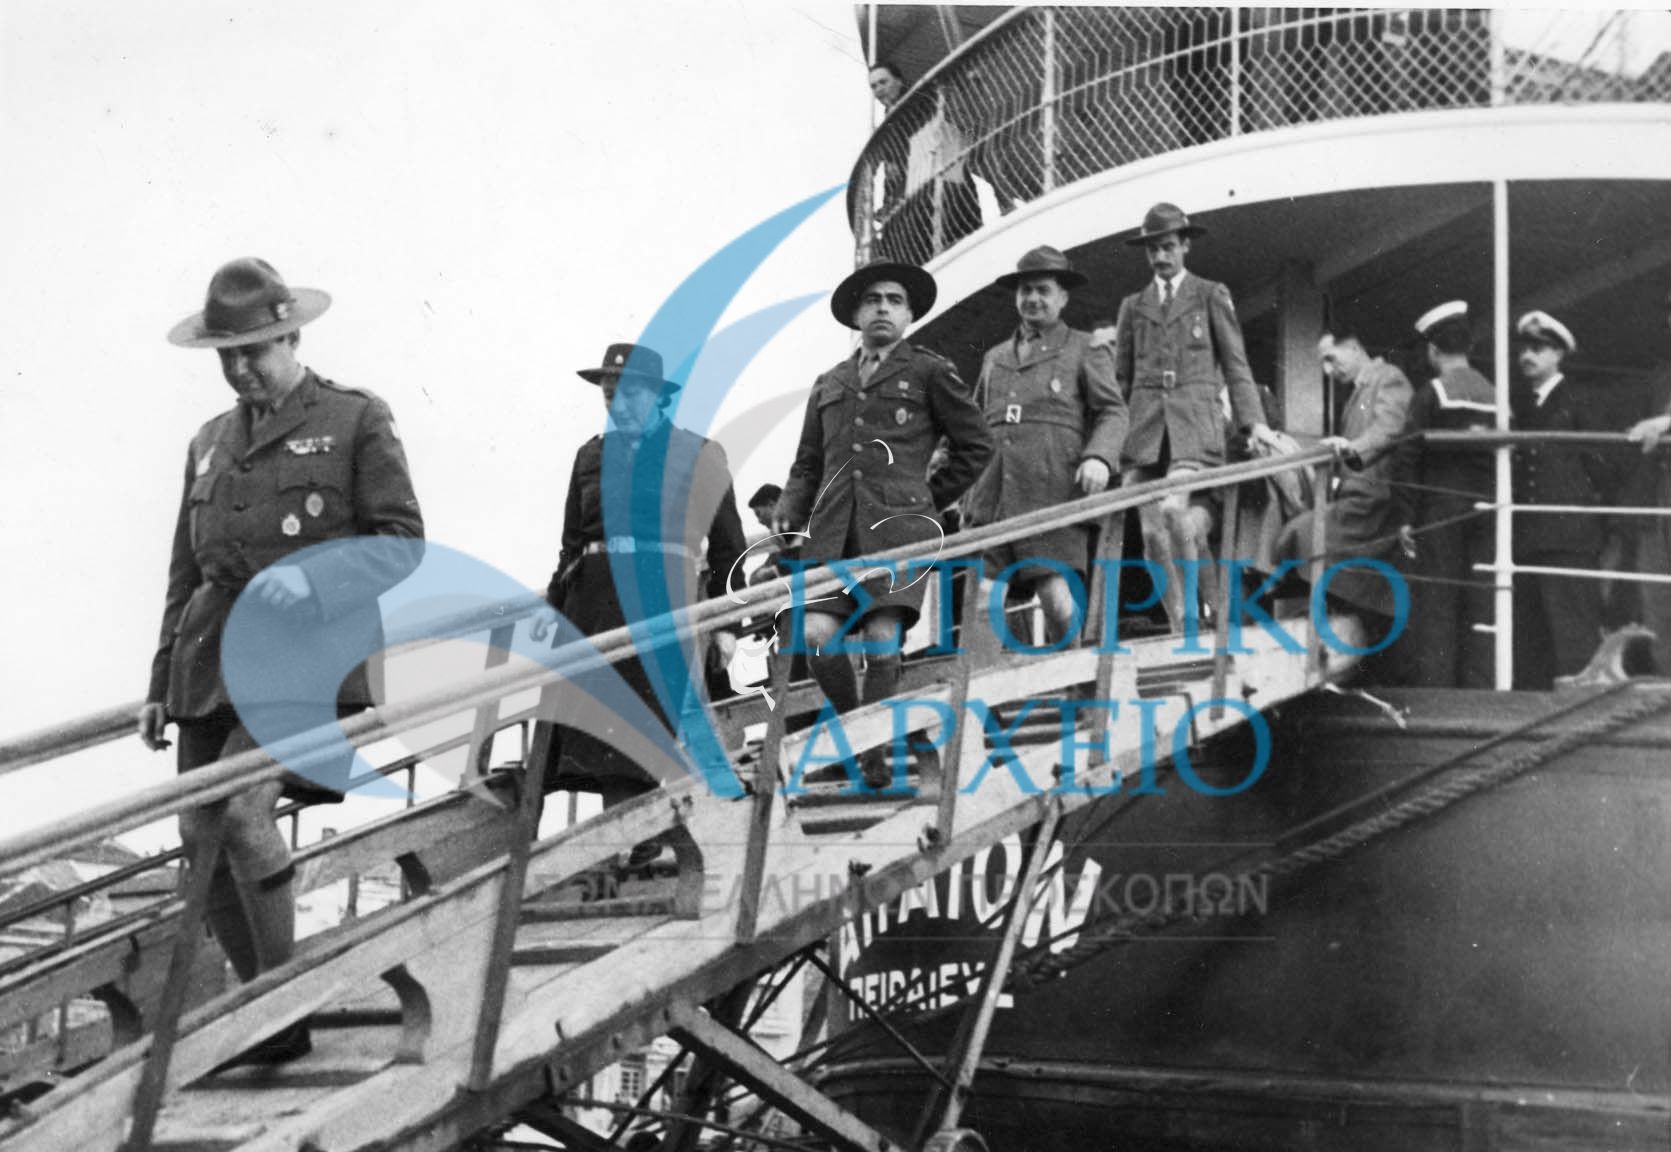 Ο ΓΕ Δ. Αλεξάτος αποβιβάζεται από το πλοίο στο Λιμάνι της Μυτιλήνης προκειμένου να επισκεφτεί το νησί τον Μάρτιο του 1951.